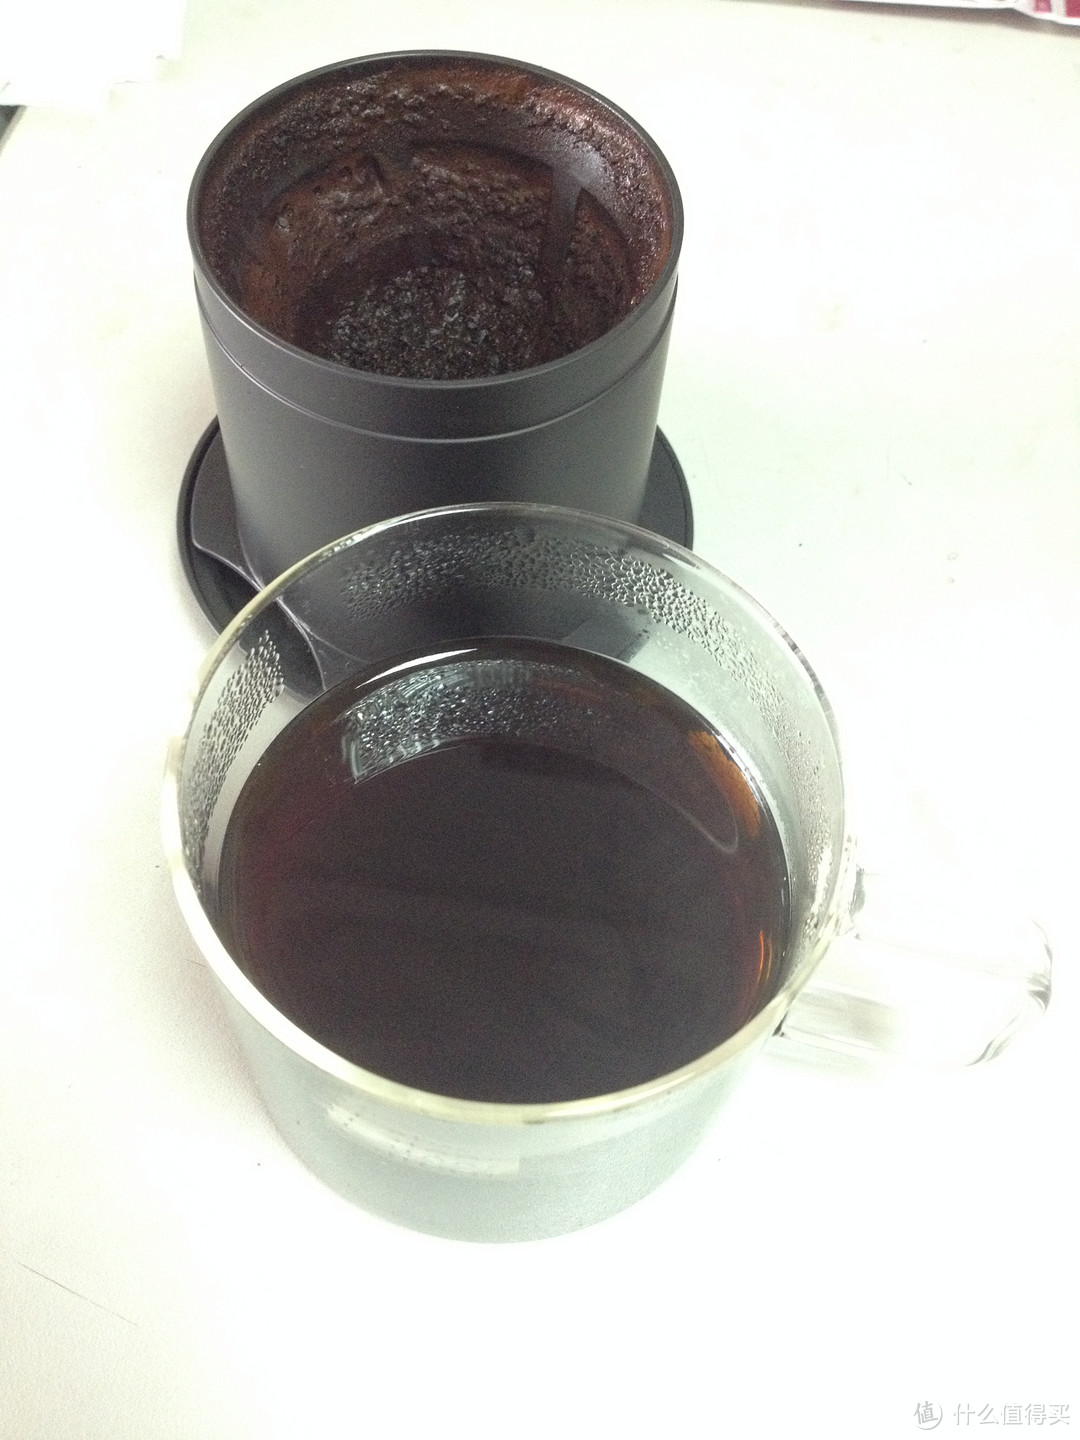 滤泡咖啡装备：HARIO 陶瓷磨芯手摇咖啡磨豆机 MSS-1B、不锈钢过滤网一人份咖啡壶 CFO-1B